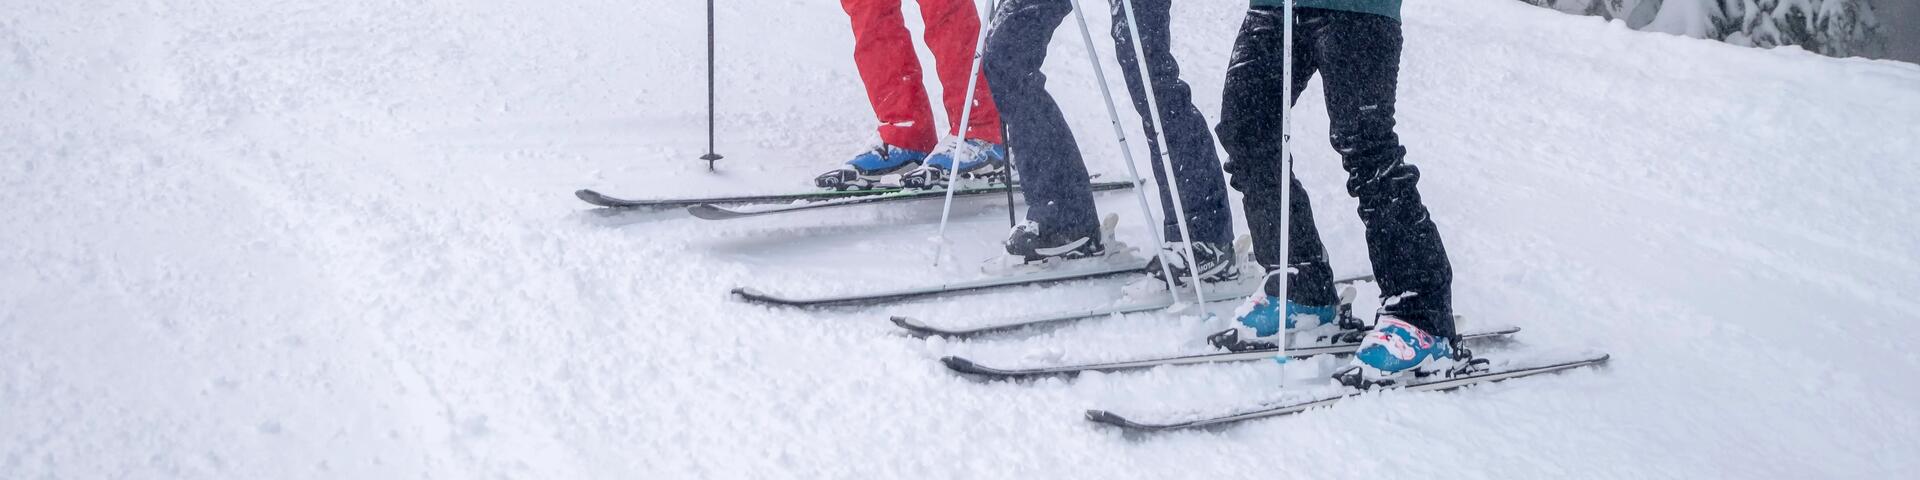 mężczyźni stojący na nartach w śniegu